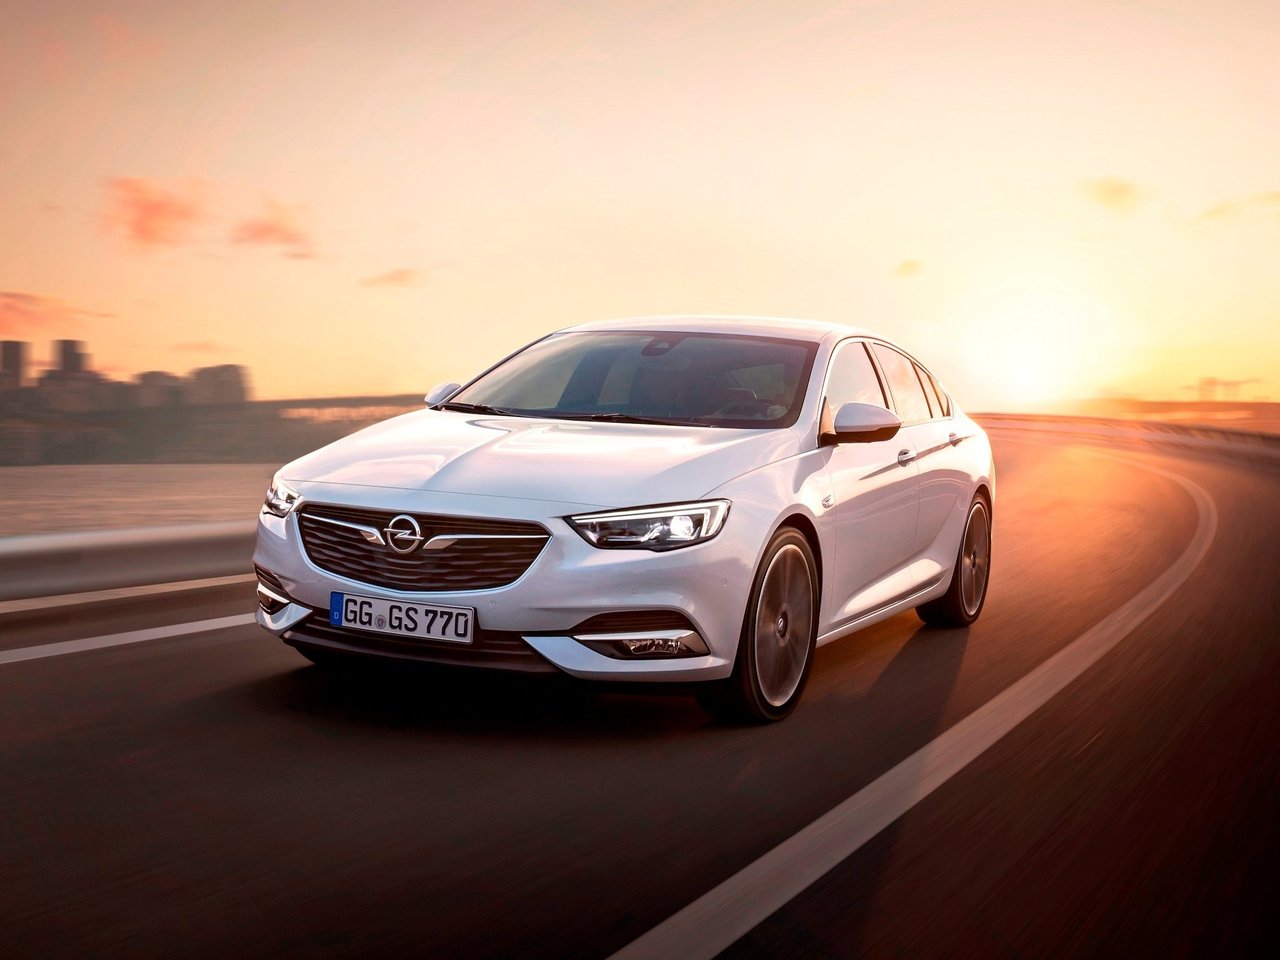 Снижаем расход Opel Insignia на топливо, устанавливаем ГБО